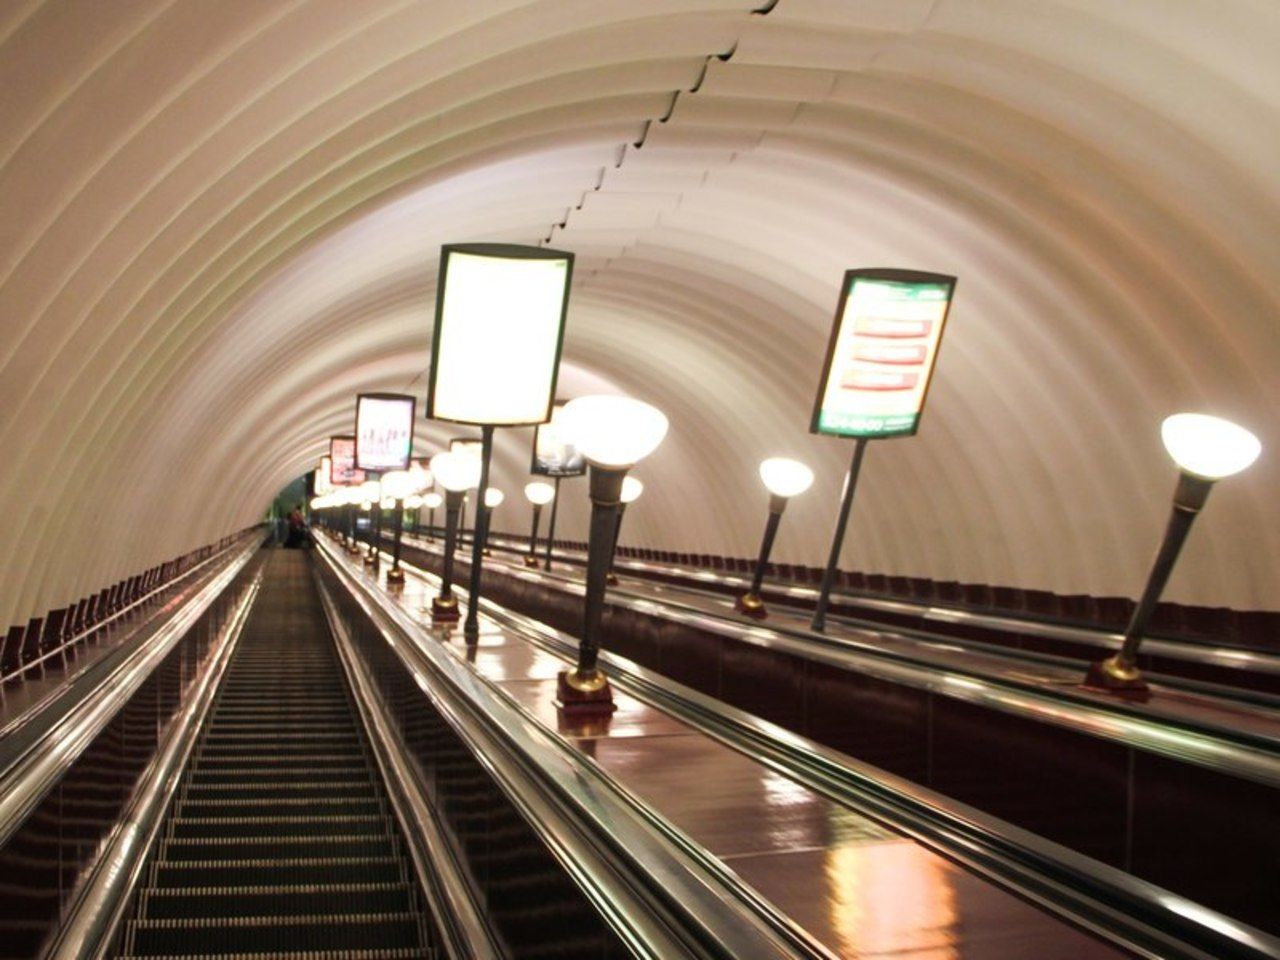 метро площадь мужества санкт петербург